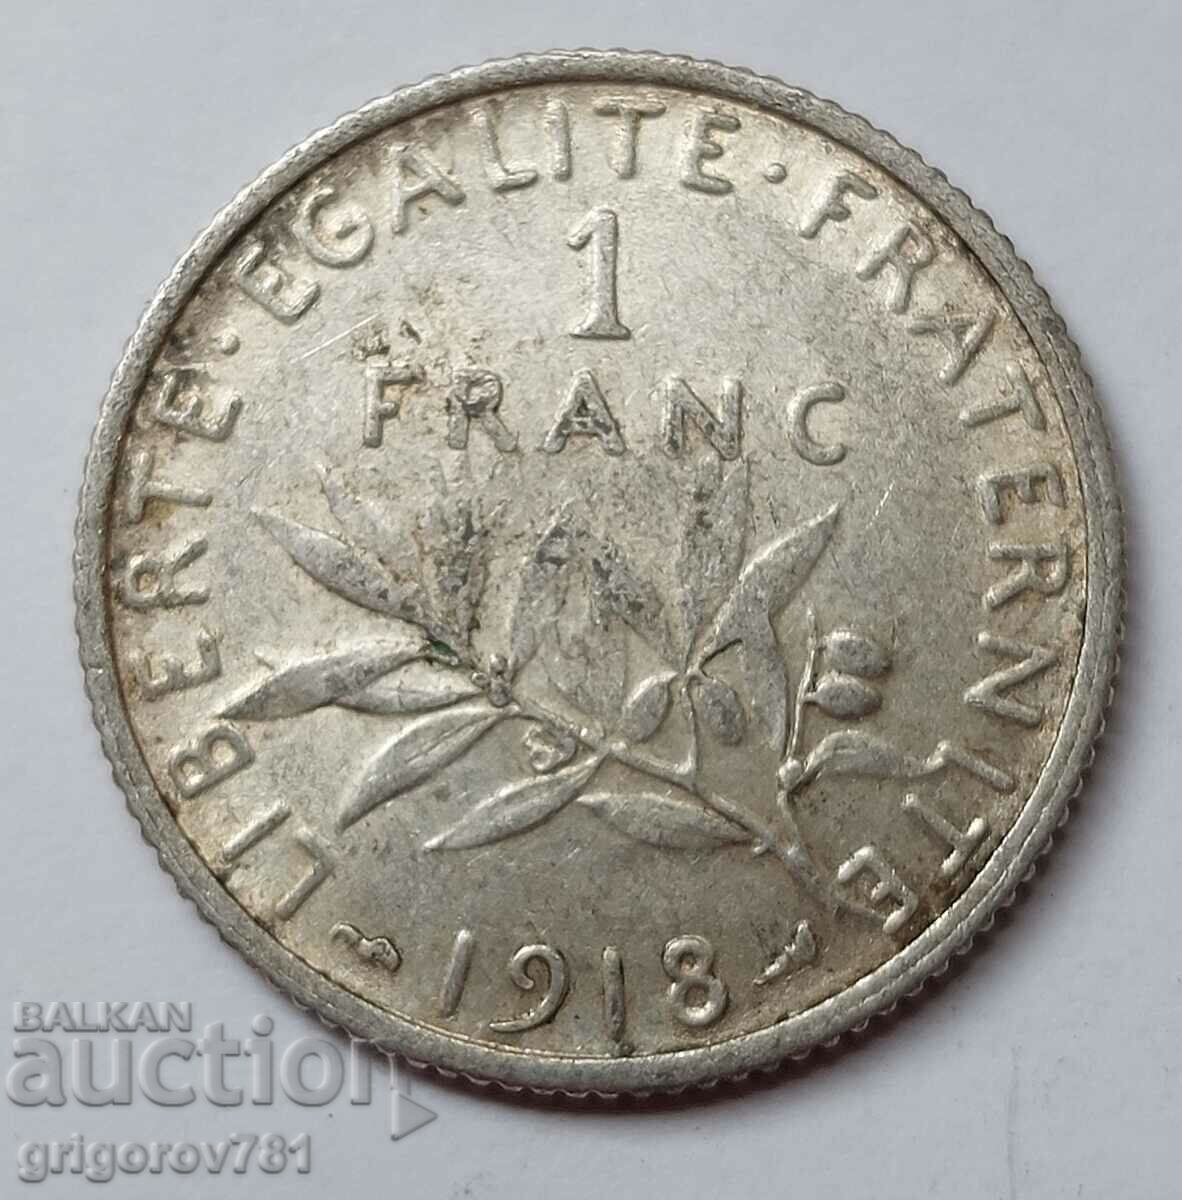 Ασημένιο 1 φράγκου Γαλλία 1918 - ασημένιο νόμισμα №17